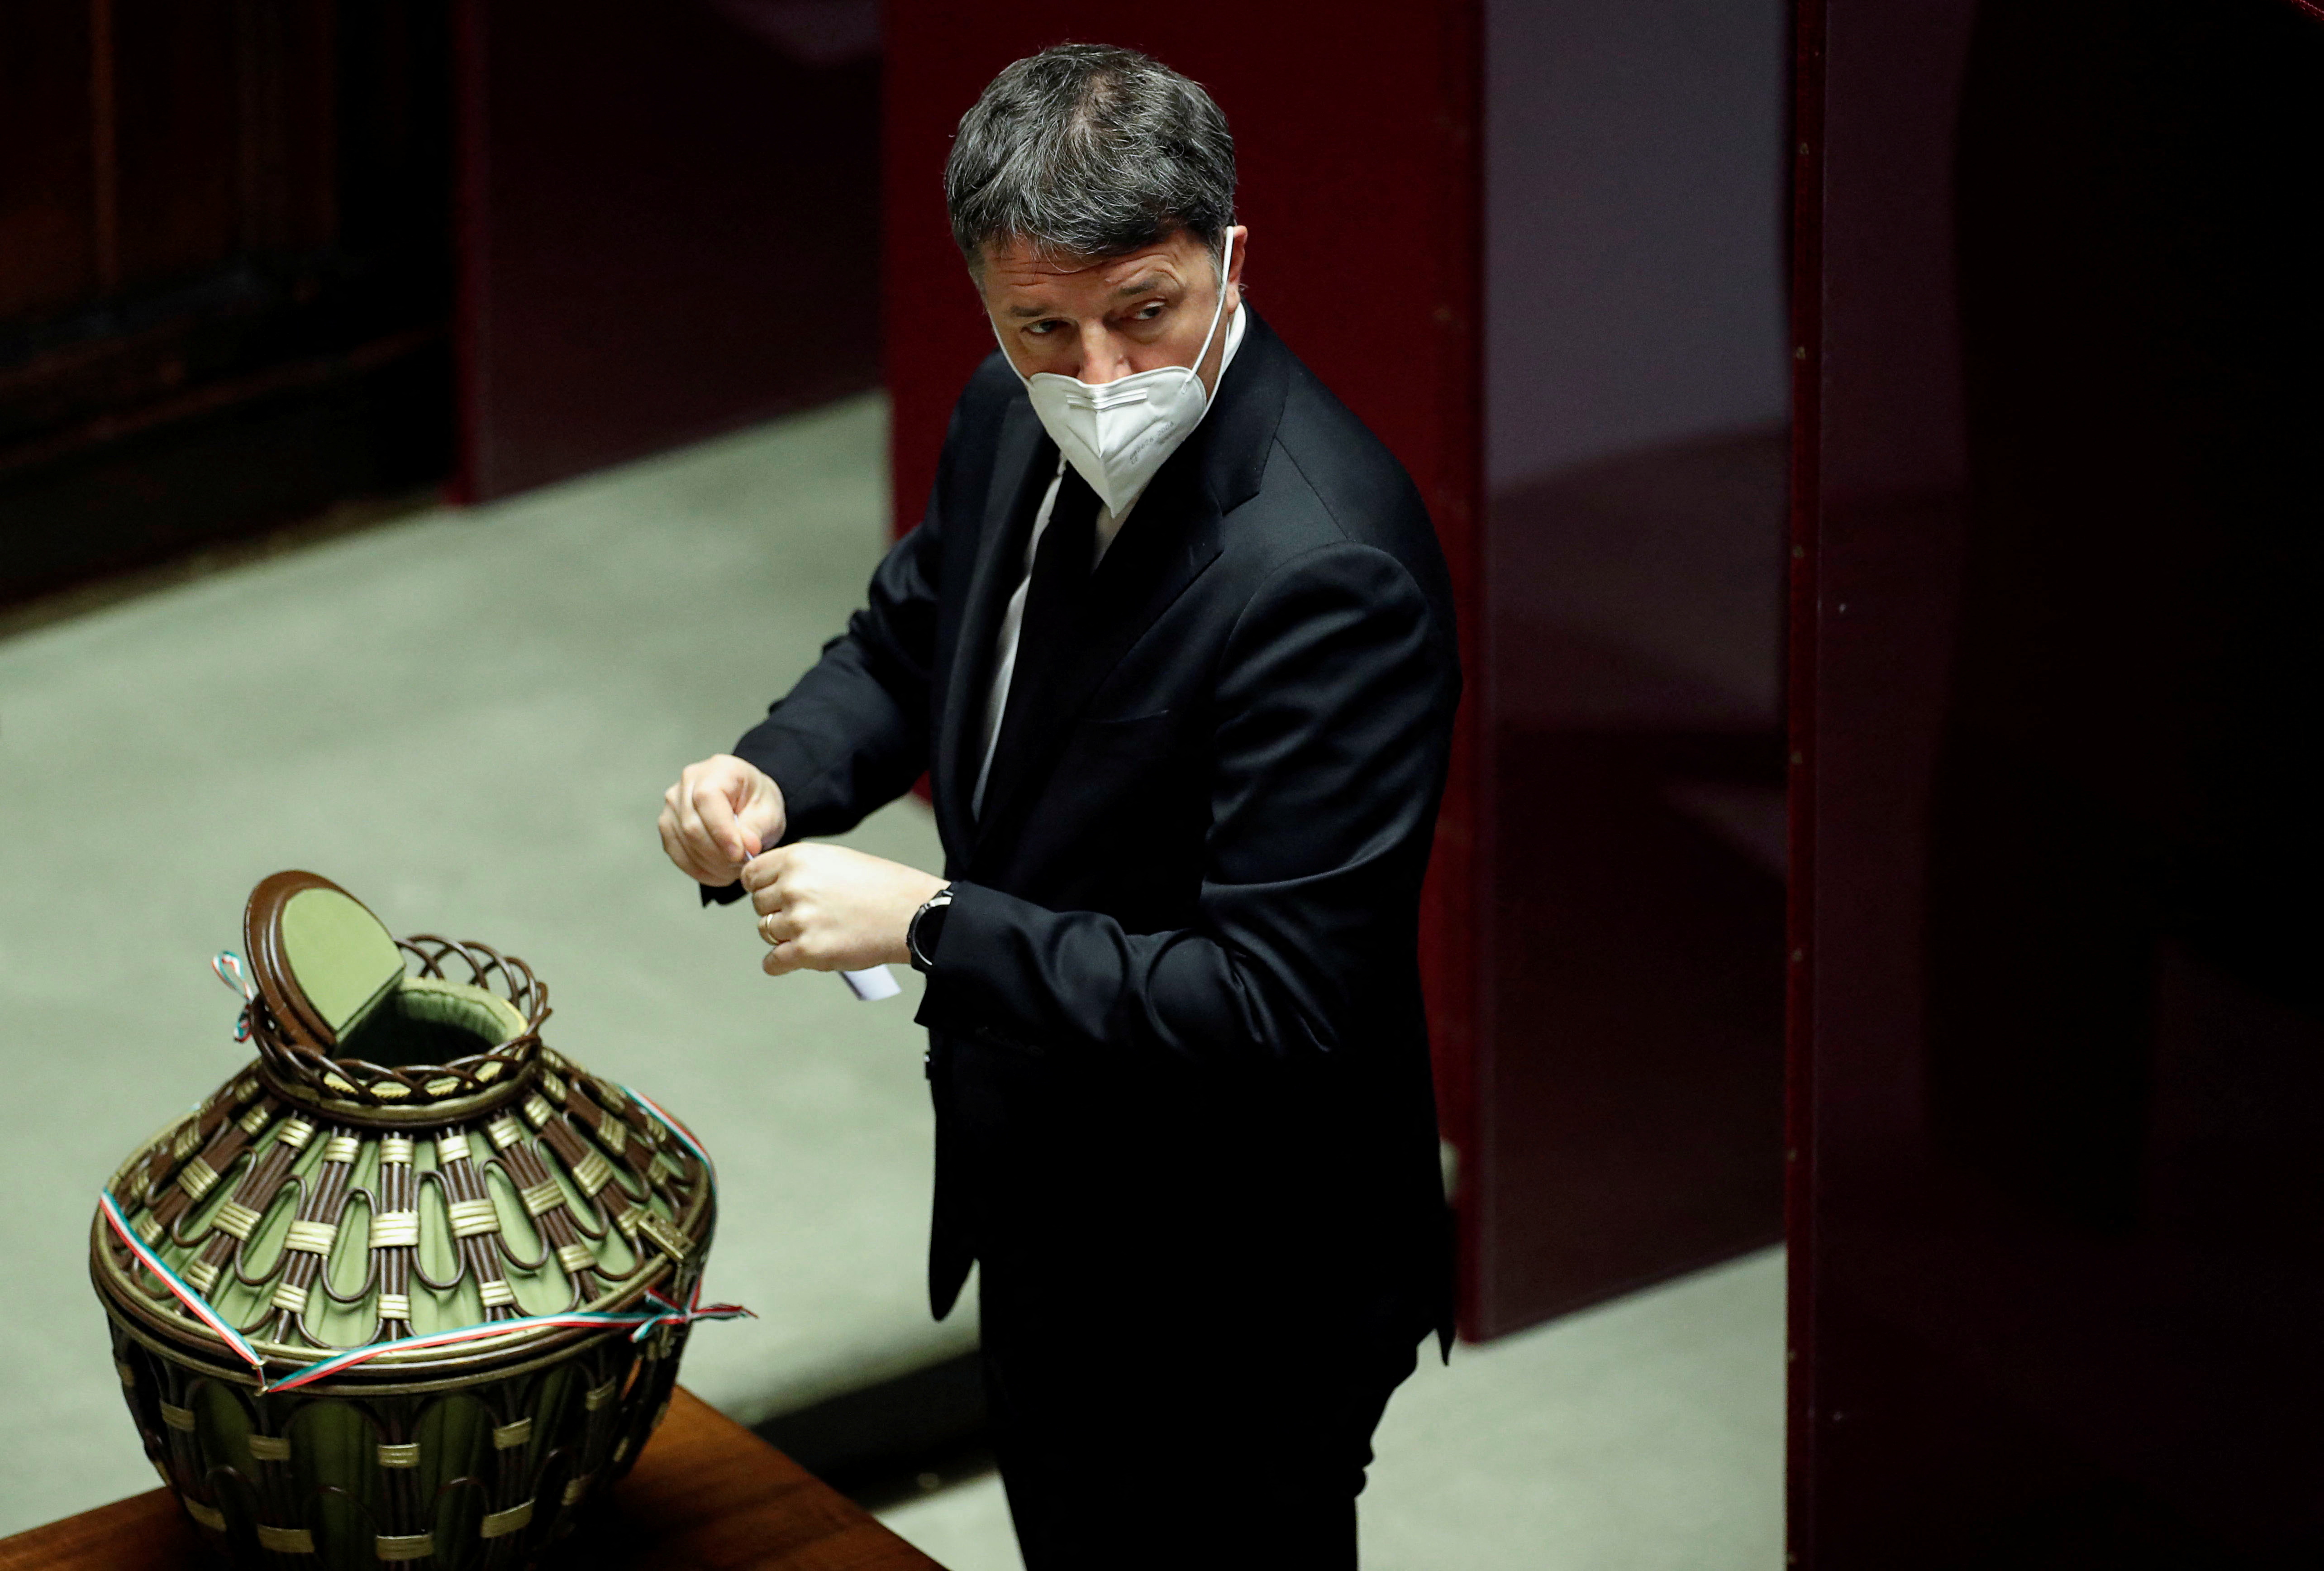 El diputado Matteo Renzi emite su voto en la Cámara de Diputados para elegir al nuevo presidente del país, en Roma, Italia, el 29 de enero de 2022. REUTERS/Remo Casilli/Pool